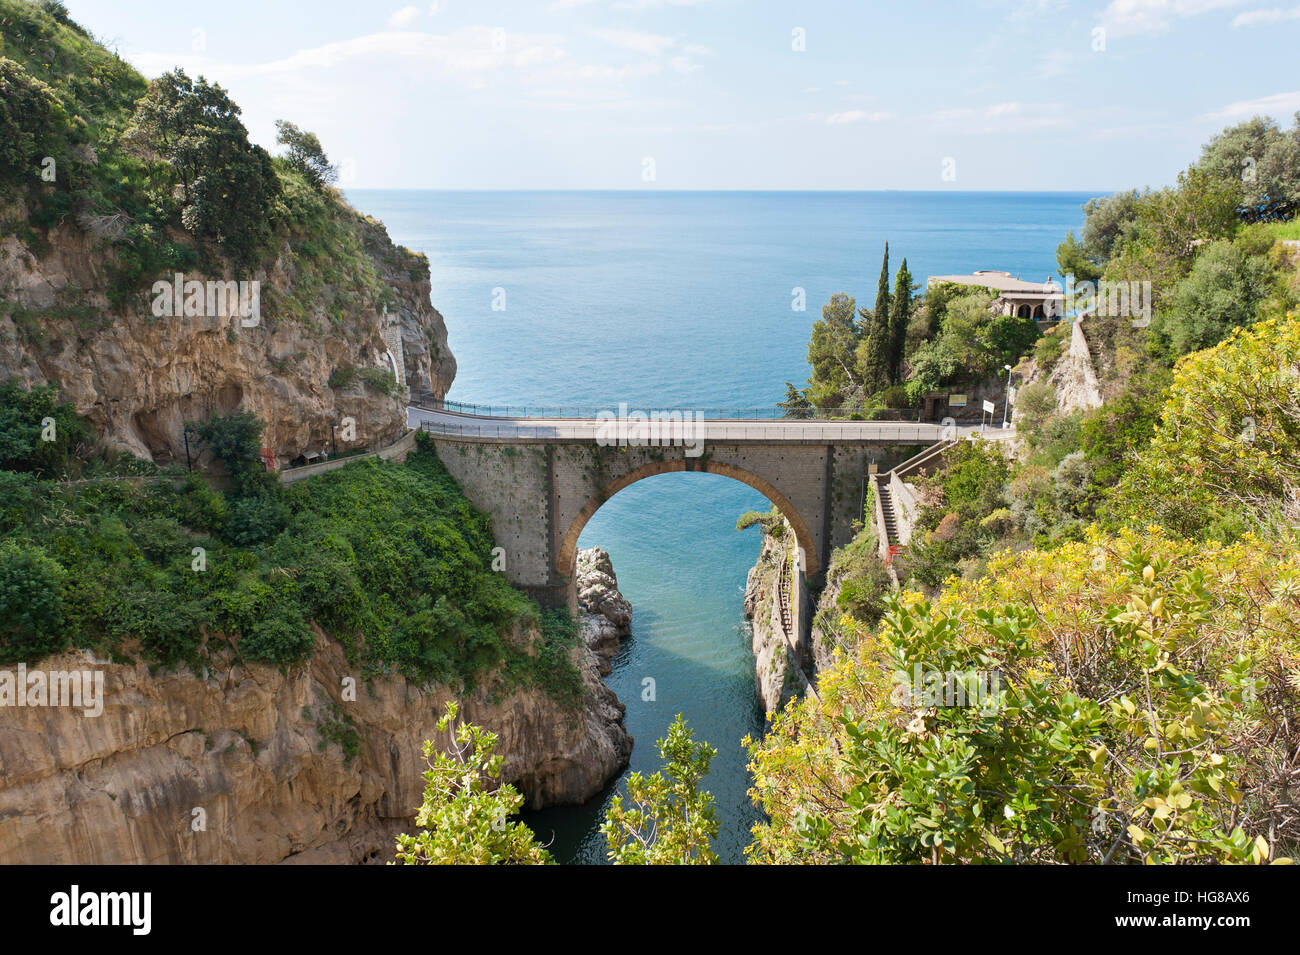 Fjord, bridge over the Fiordo di Furore, Furore, Amalfi Coast, Salerno, Campania, Italy Stock Photo